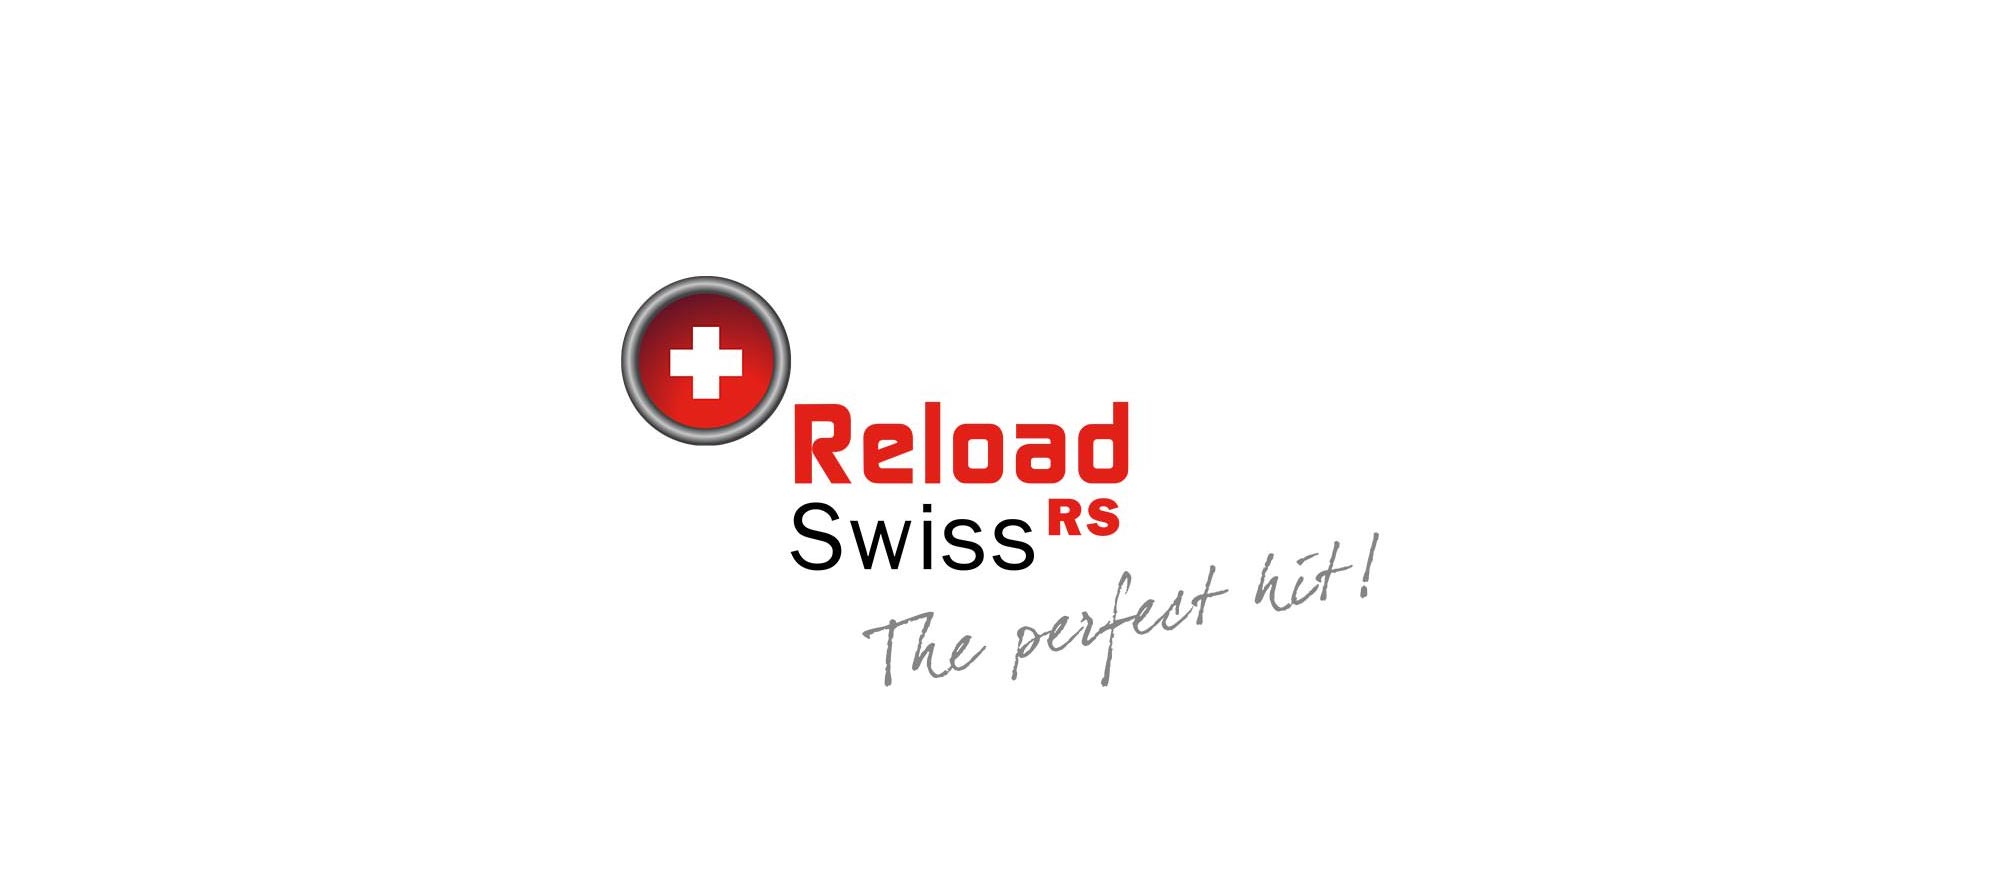 Reload Swiss Bh Firearms